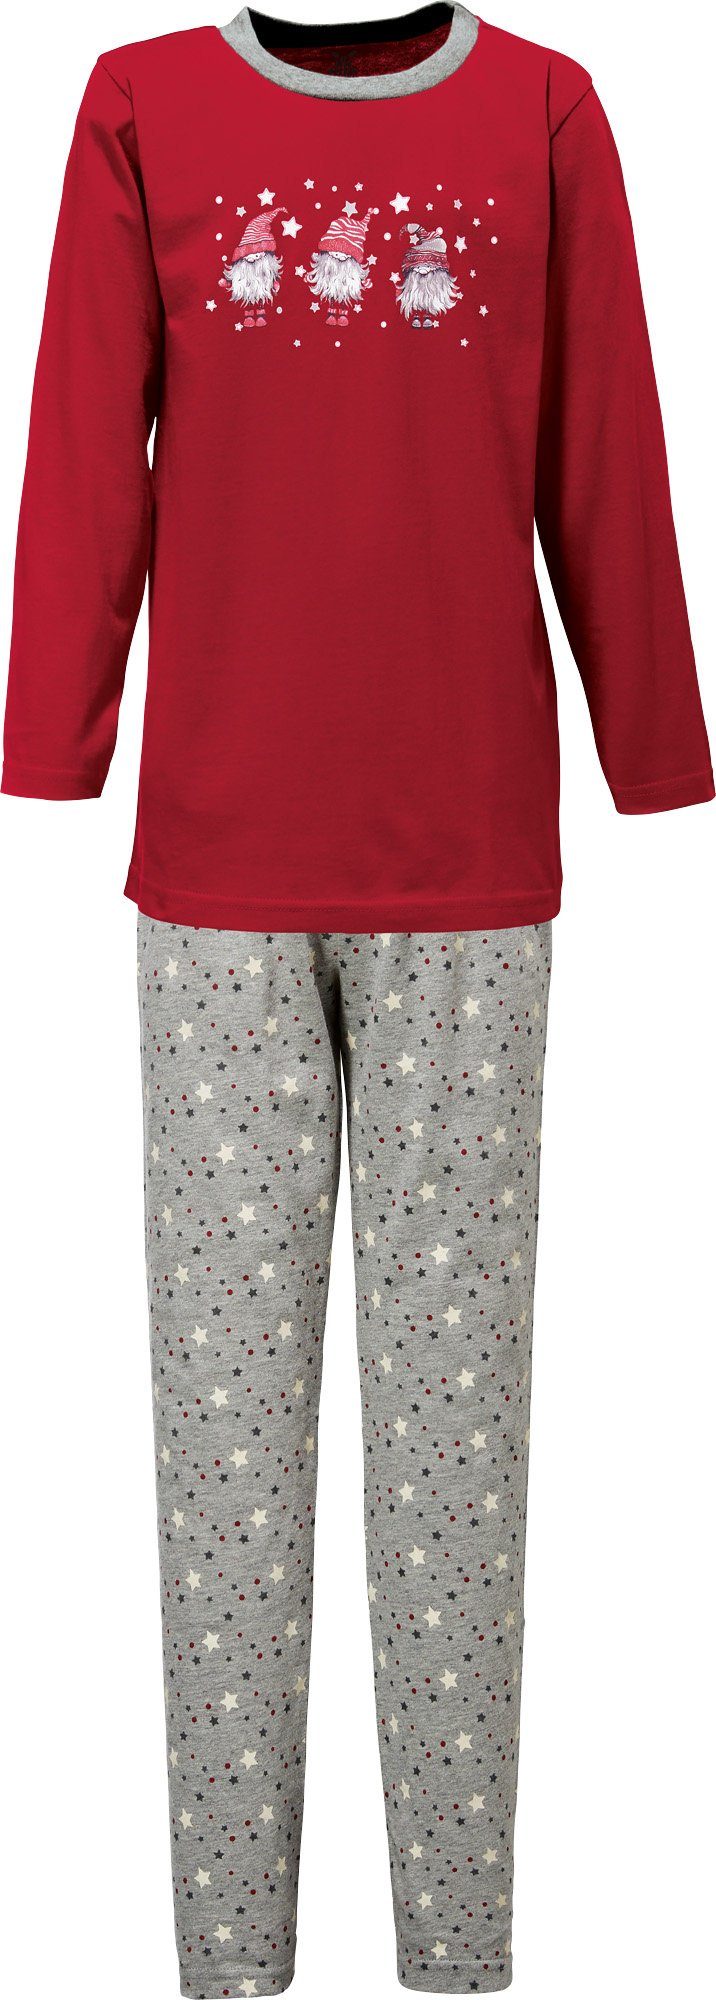 Erwin Müller Pyjama Kinder-Schlafanzug Single-Jersey Sterne